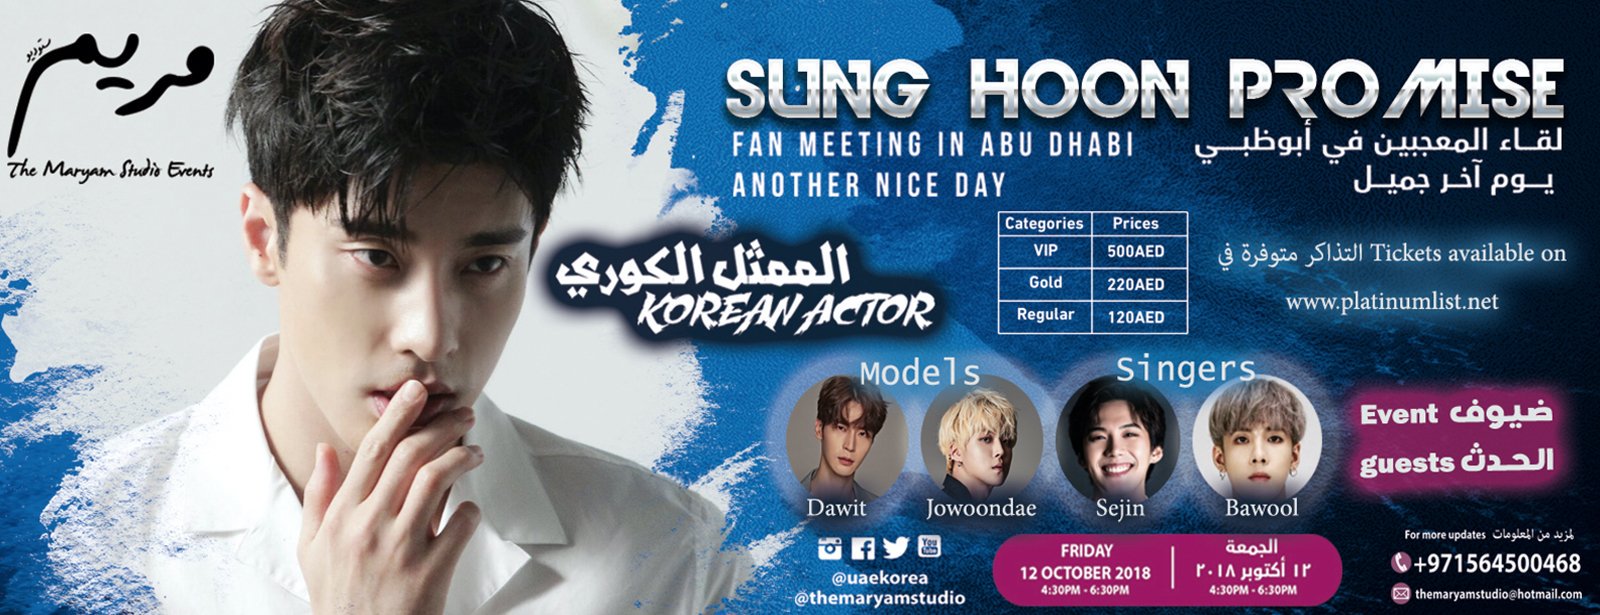 Sung Hoon Fan Meeting in Abu Dhabi - Coming Soon in UAE